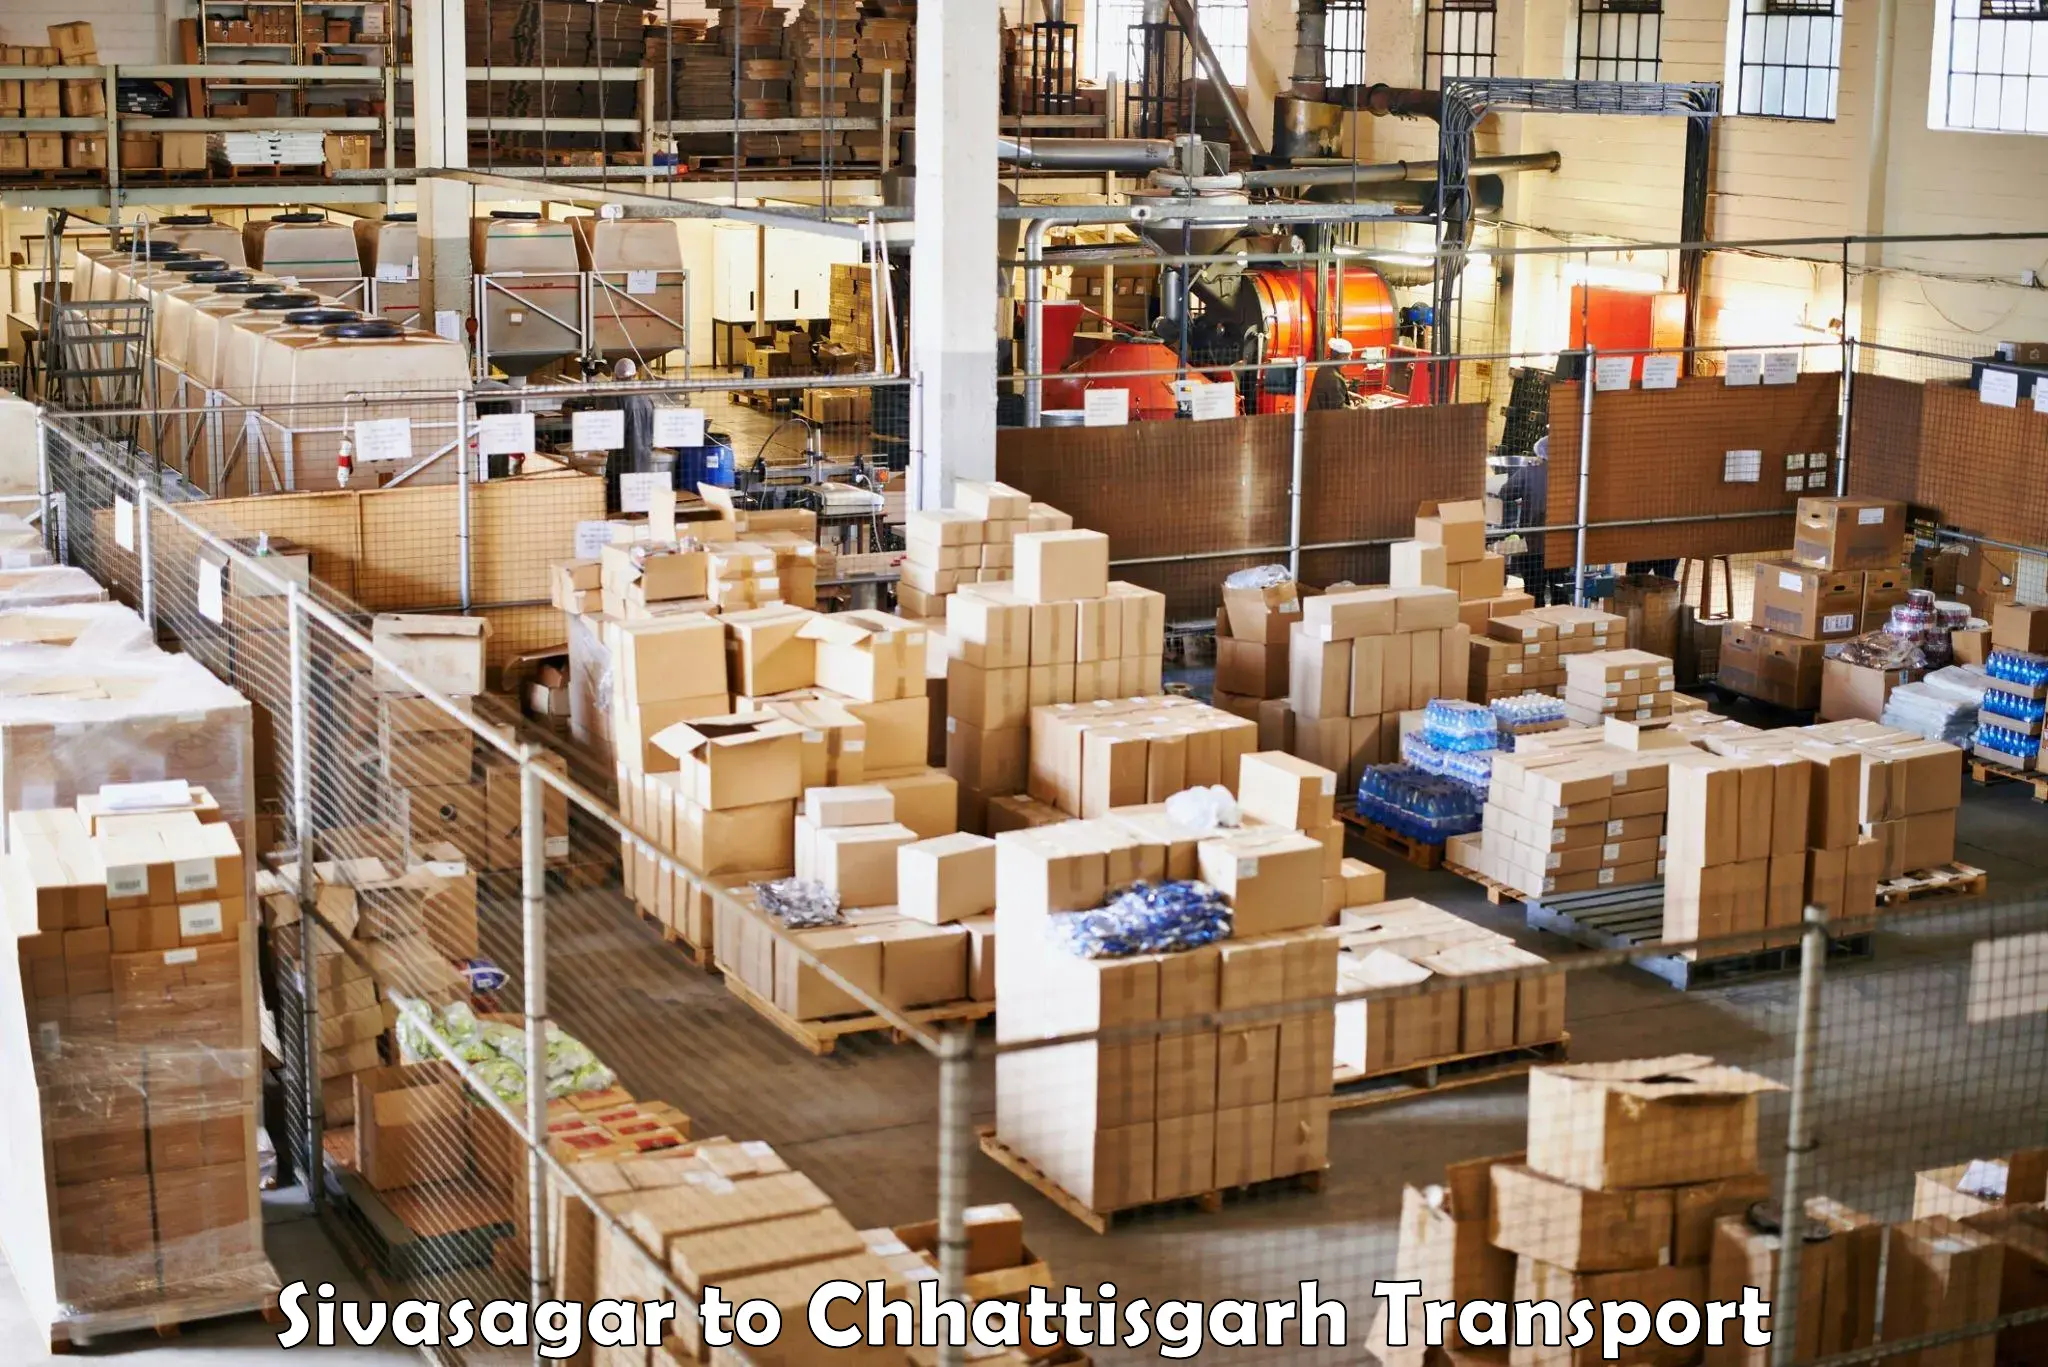 Transport in sharing Sivasagar to Patna Chhattisgarh